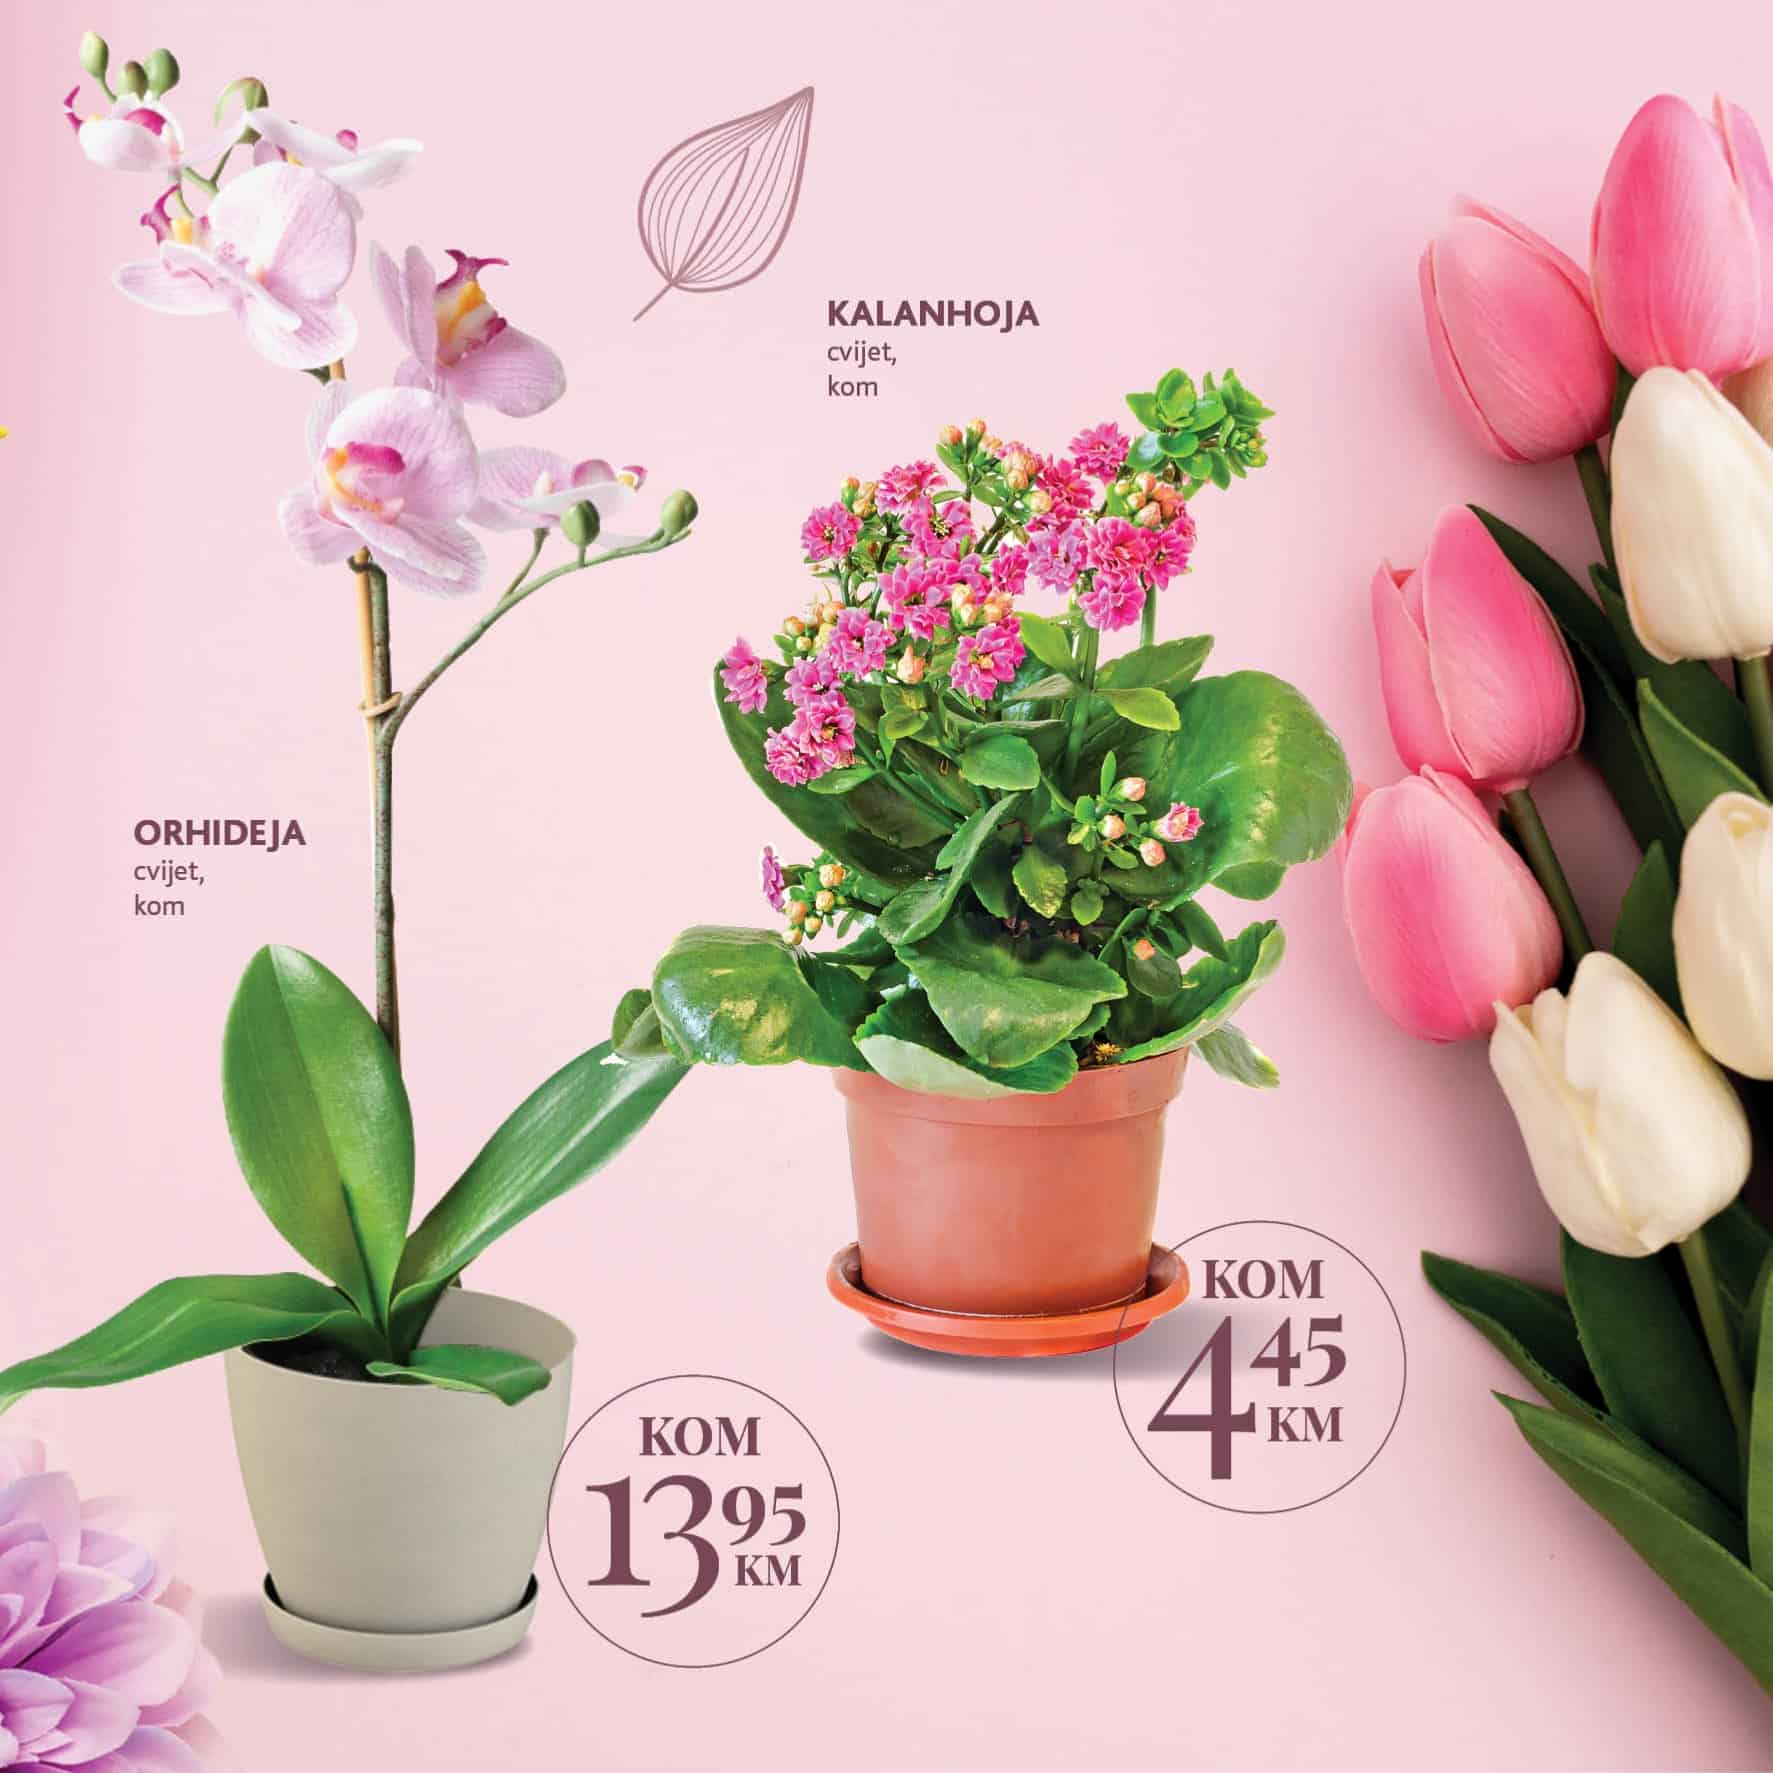 Cvijet je uvijek dobar poklon za 8.mart. Novi Konuzm katalog donosi vam super cijene prelijepog cvijeca u saksijama. 